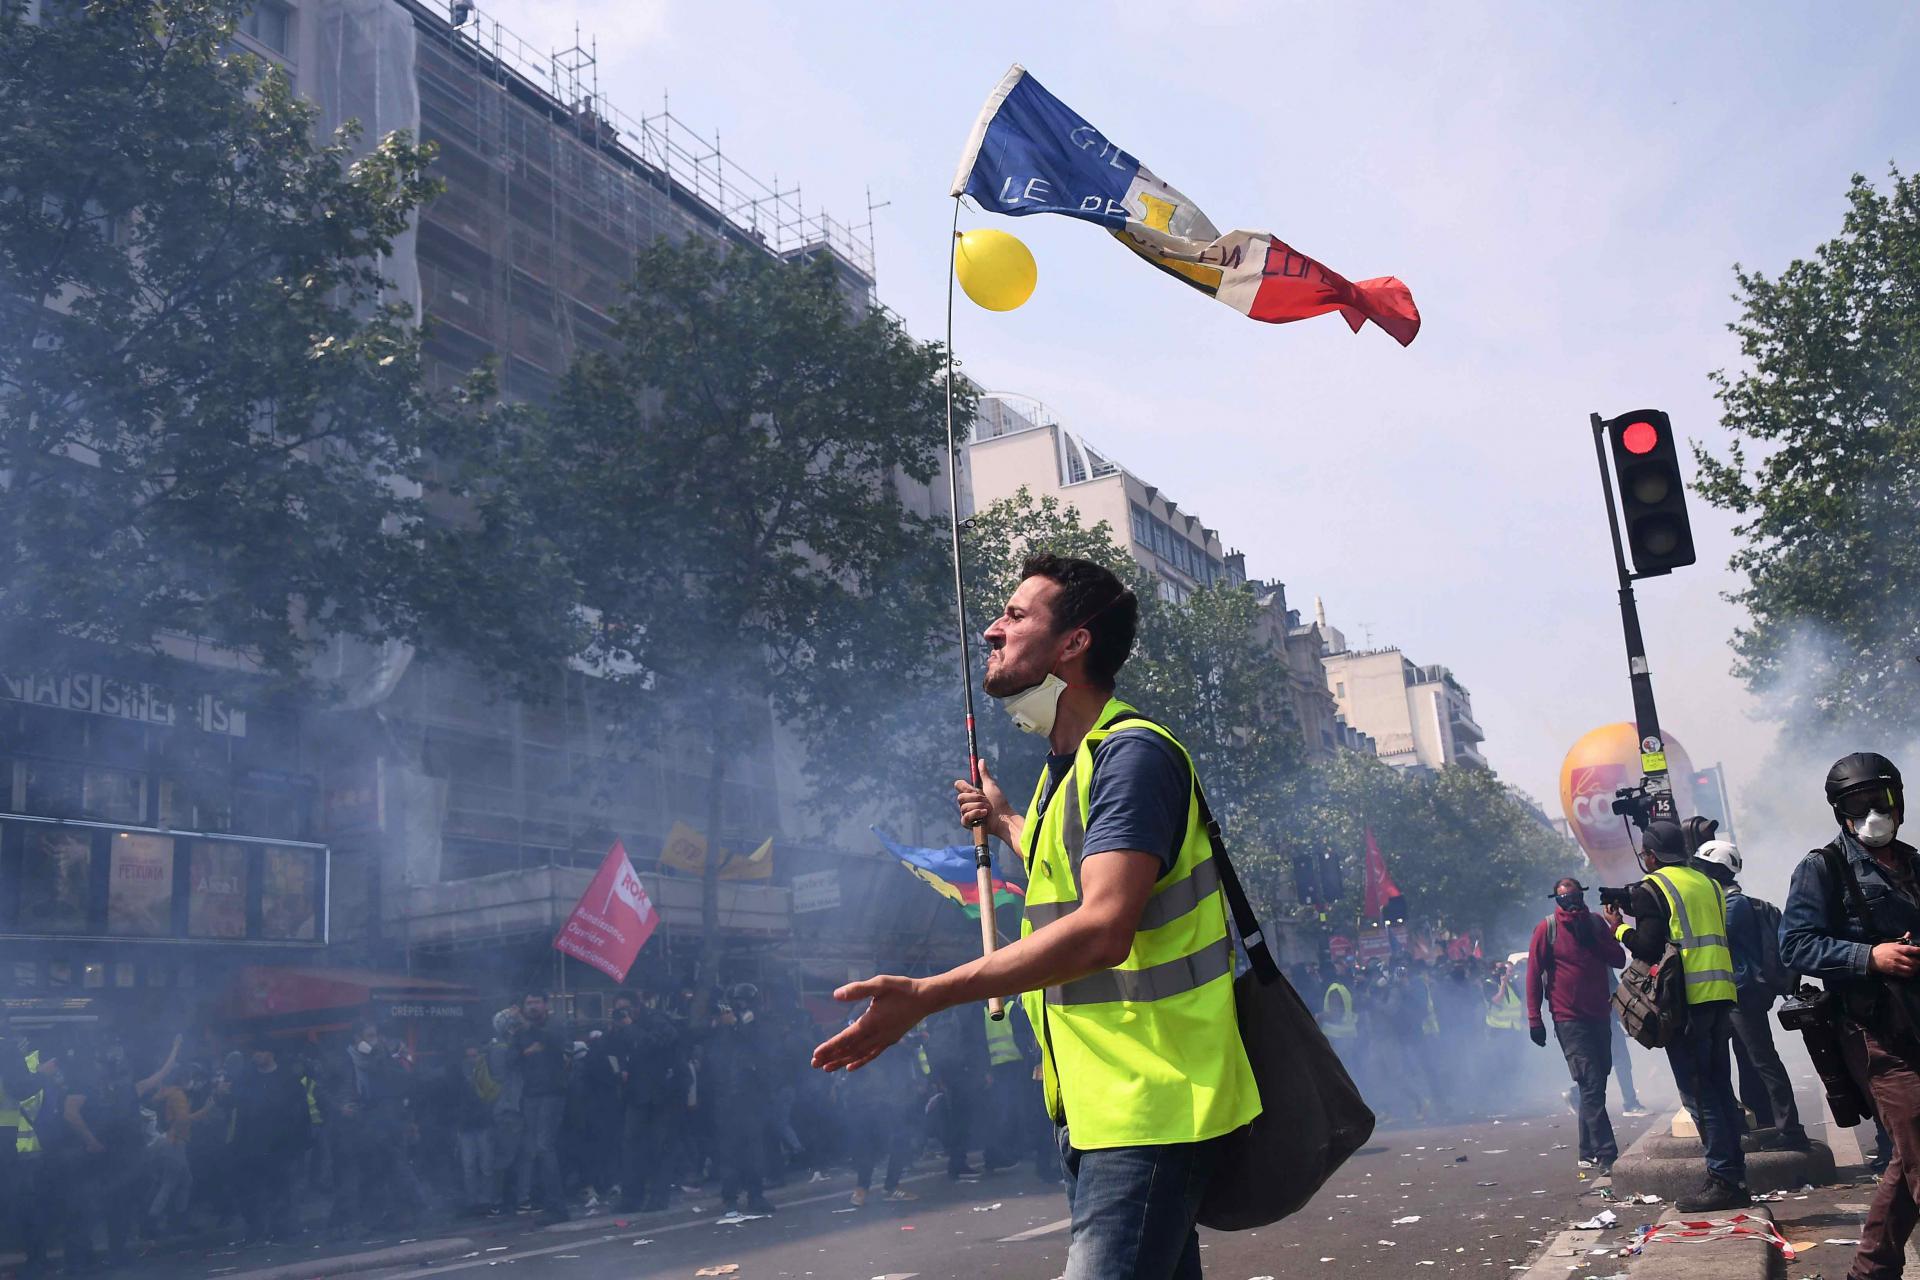 الشرطة استخدمت الغاز المسيل للدموع لتفرقة المحتجين في شوارع باريس